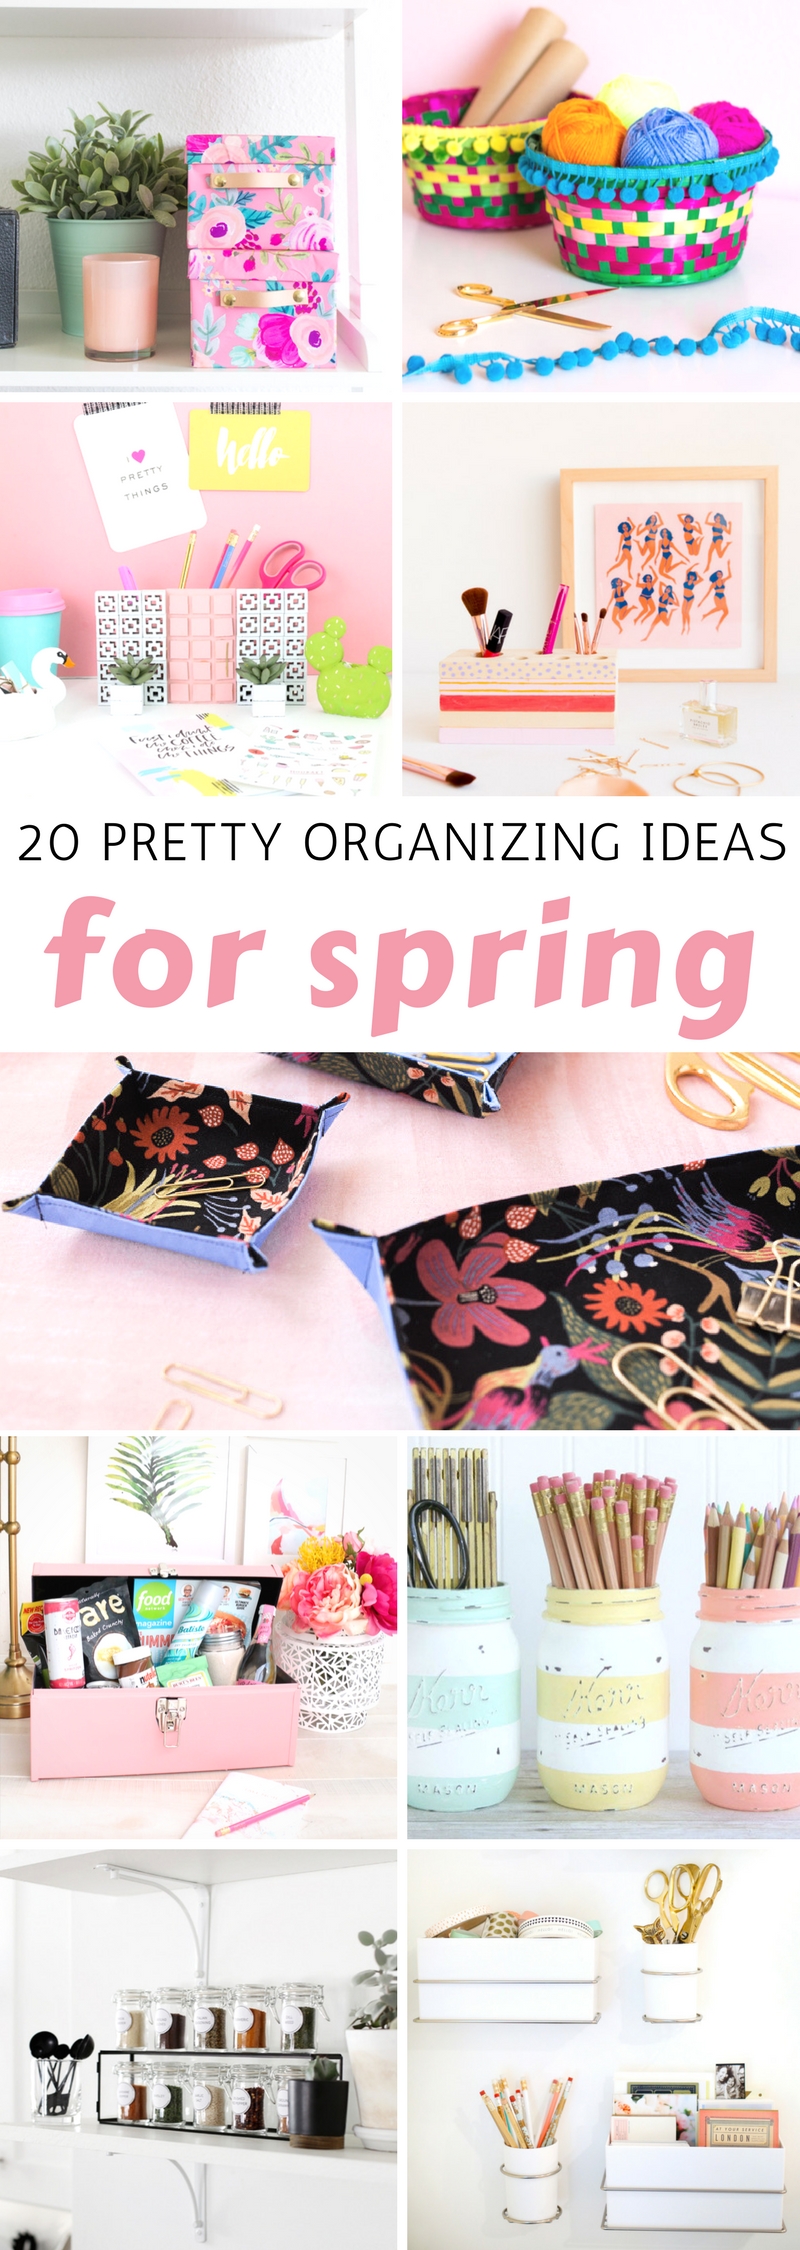 Pretty Organizing Ideas for Spring 